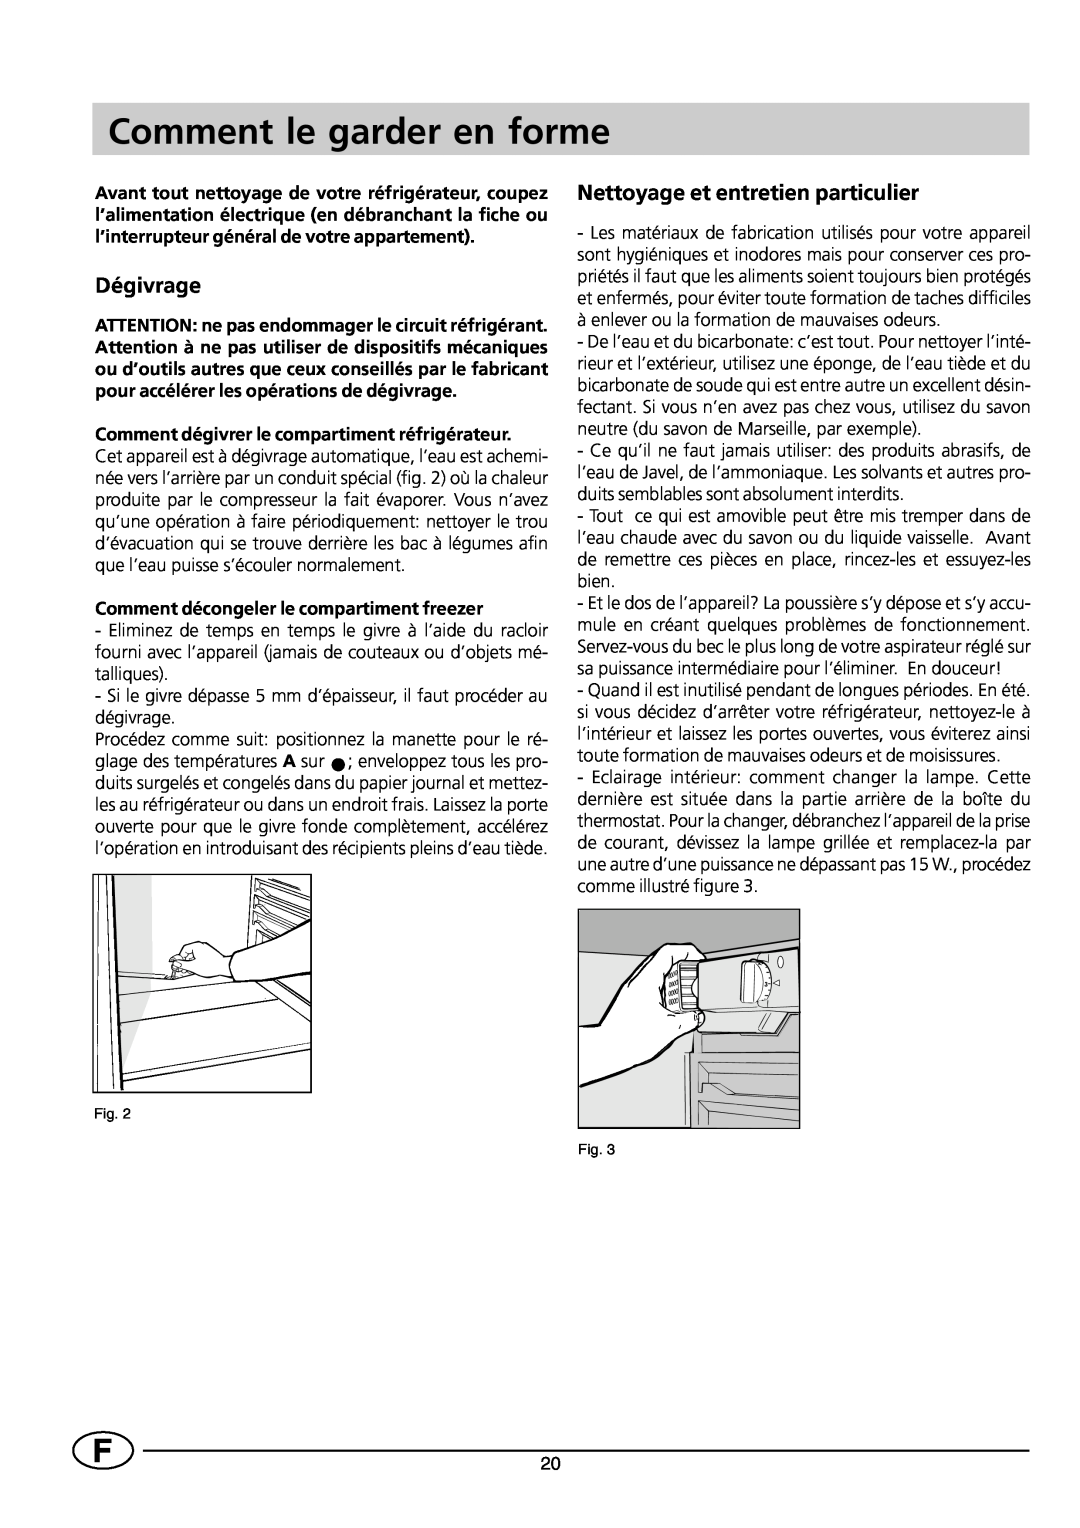 Smeg FR298SE/1 manual Comment le garder en forme, Dégivrage, Nettoyage et entretien particulier 